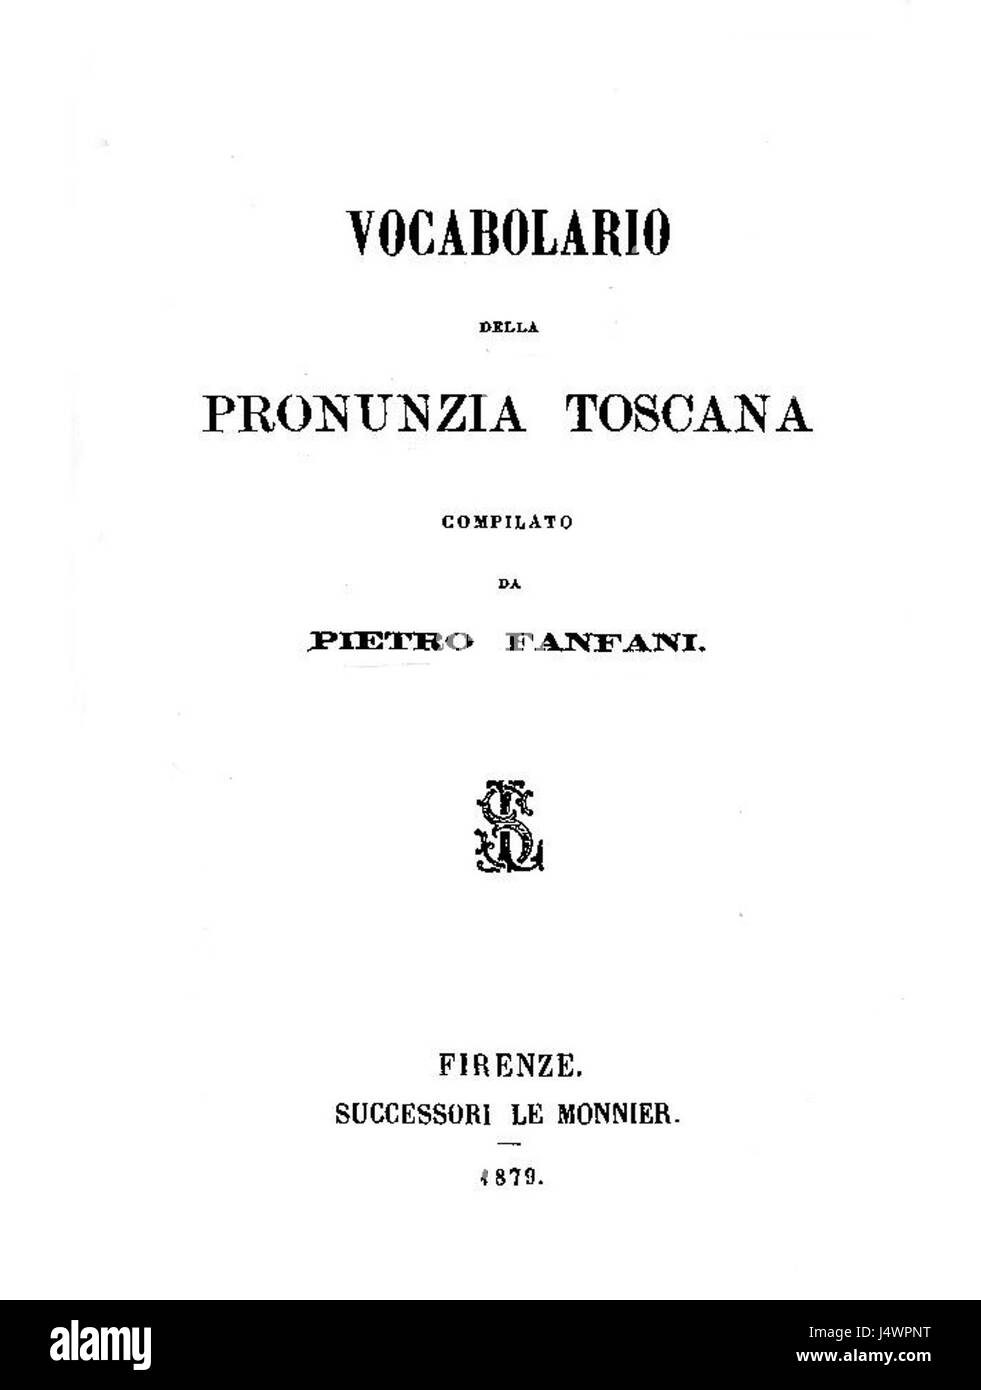 Vocabolario della Pronunzia Toscana 1879 Stockfoto